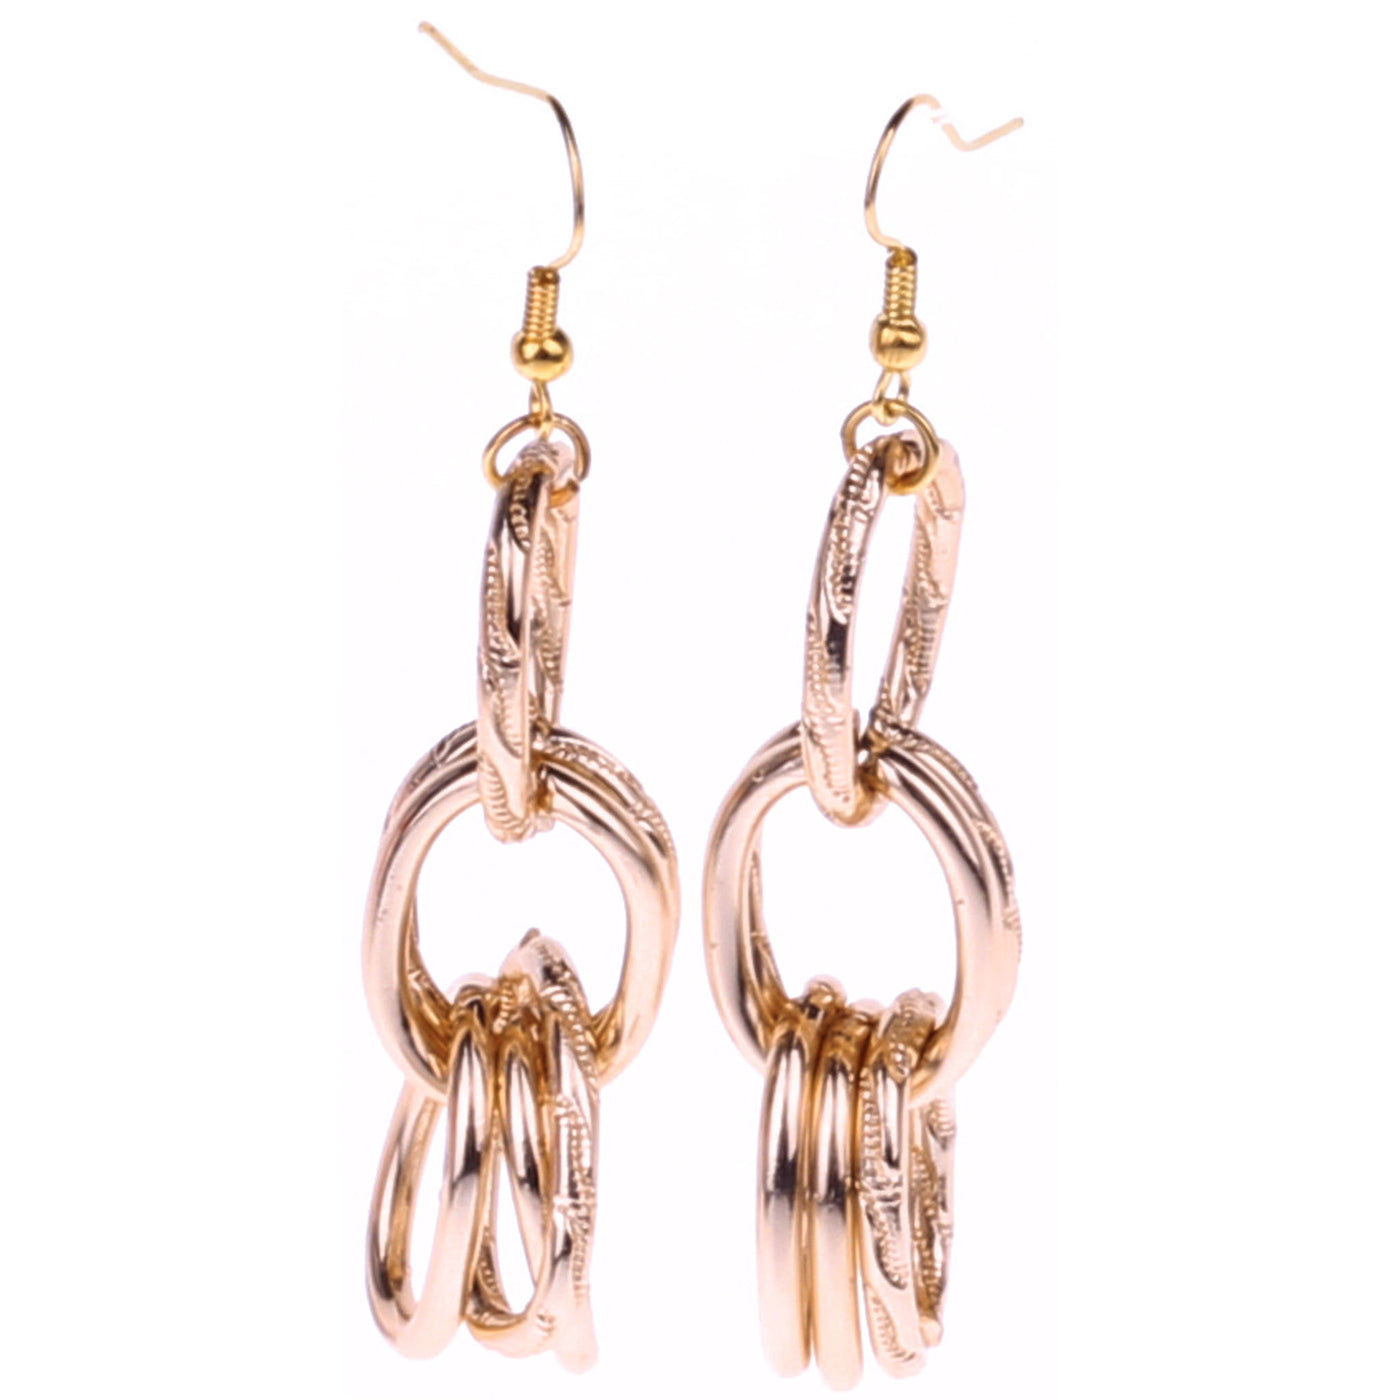 Chain earrings